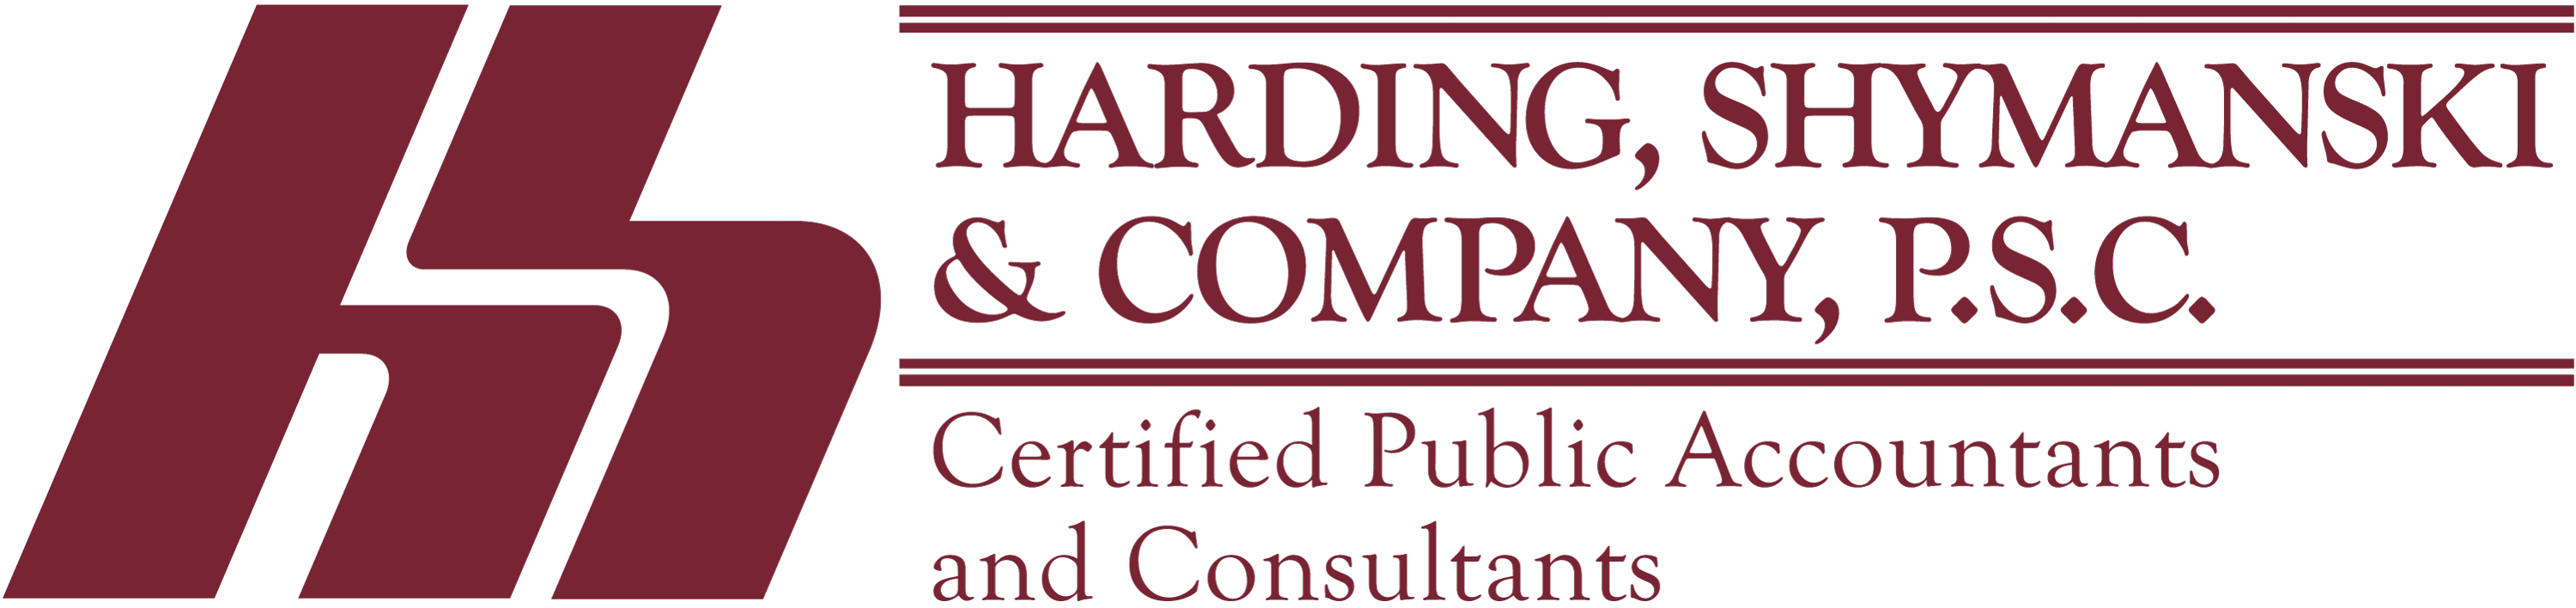 Harding, Shymanski & Co.